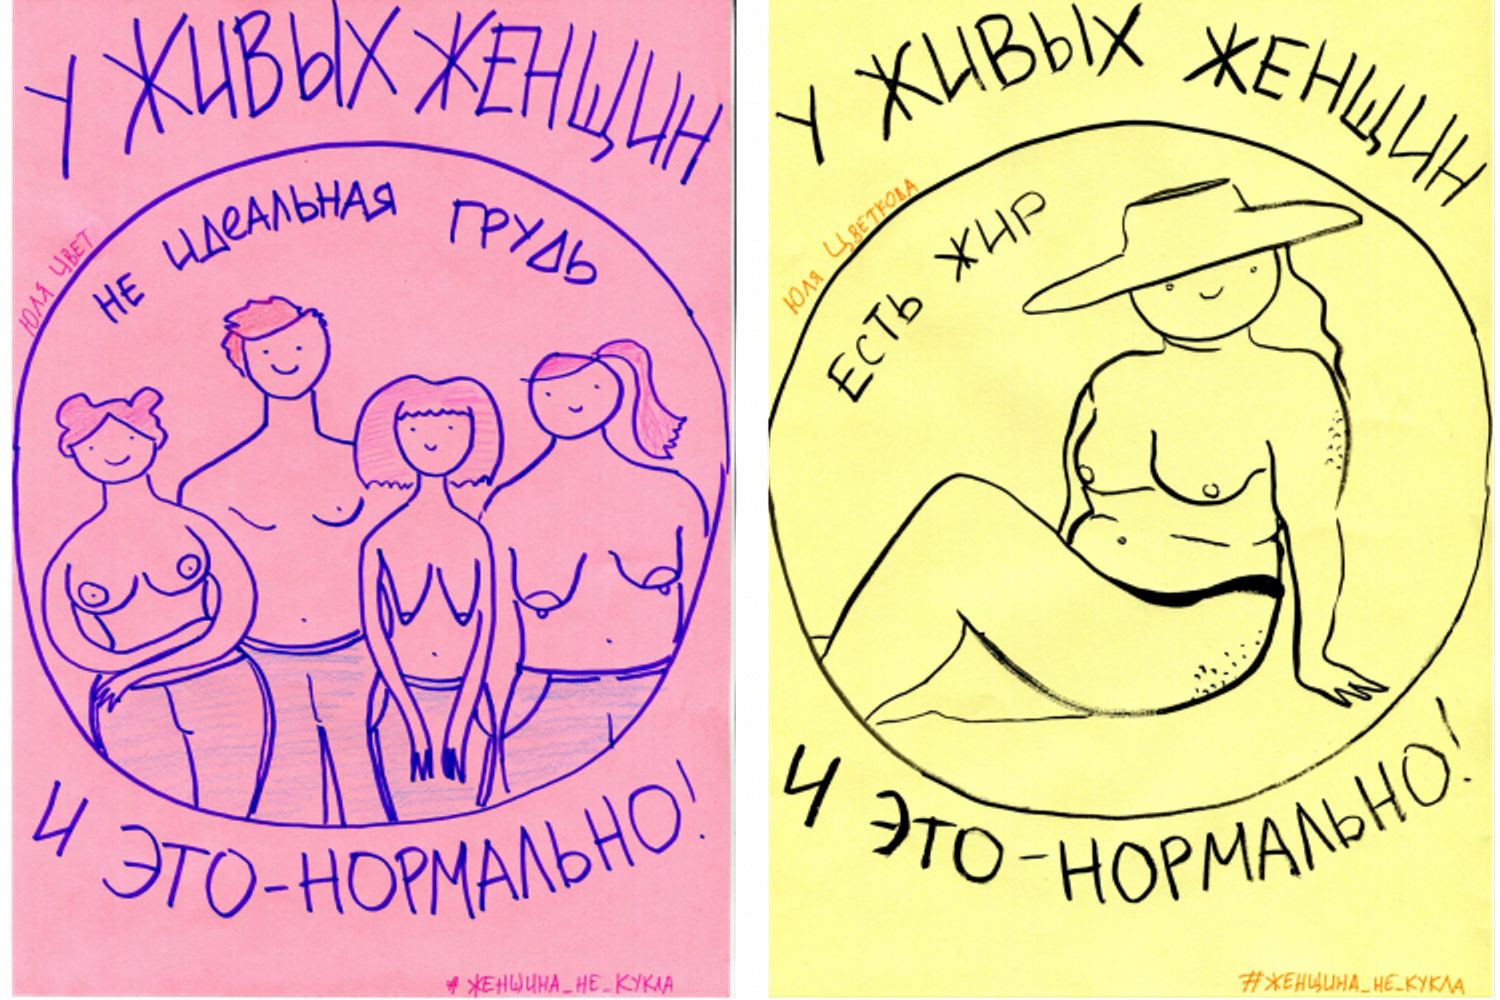 Порноместь Российской Федерации. Как власти сажают активистов за рисунки и фото голого тела